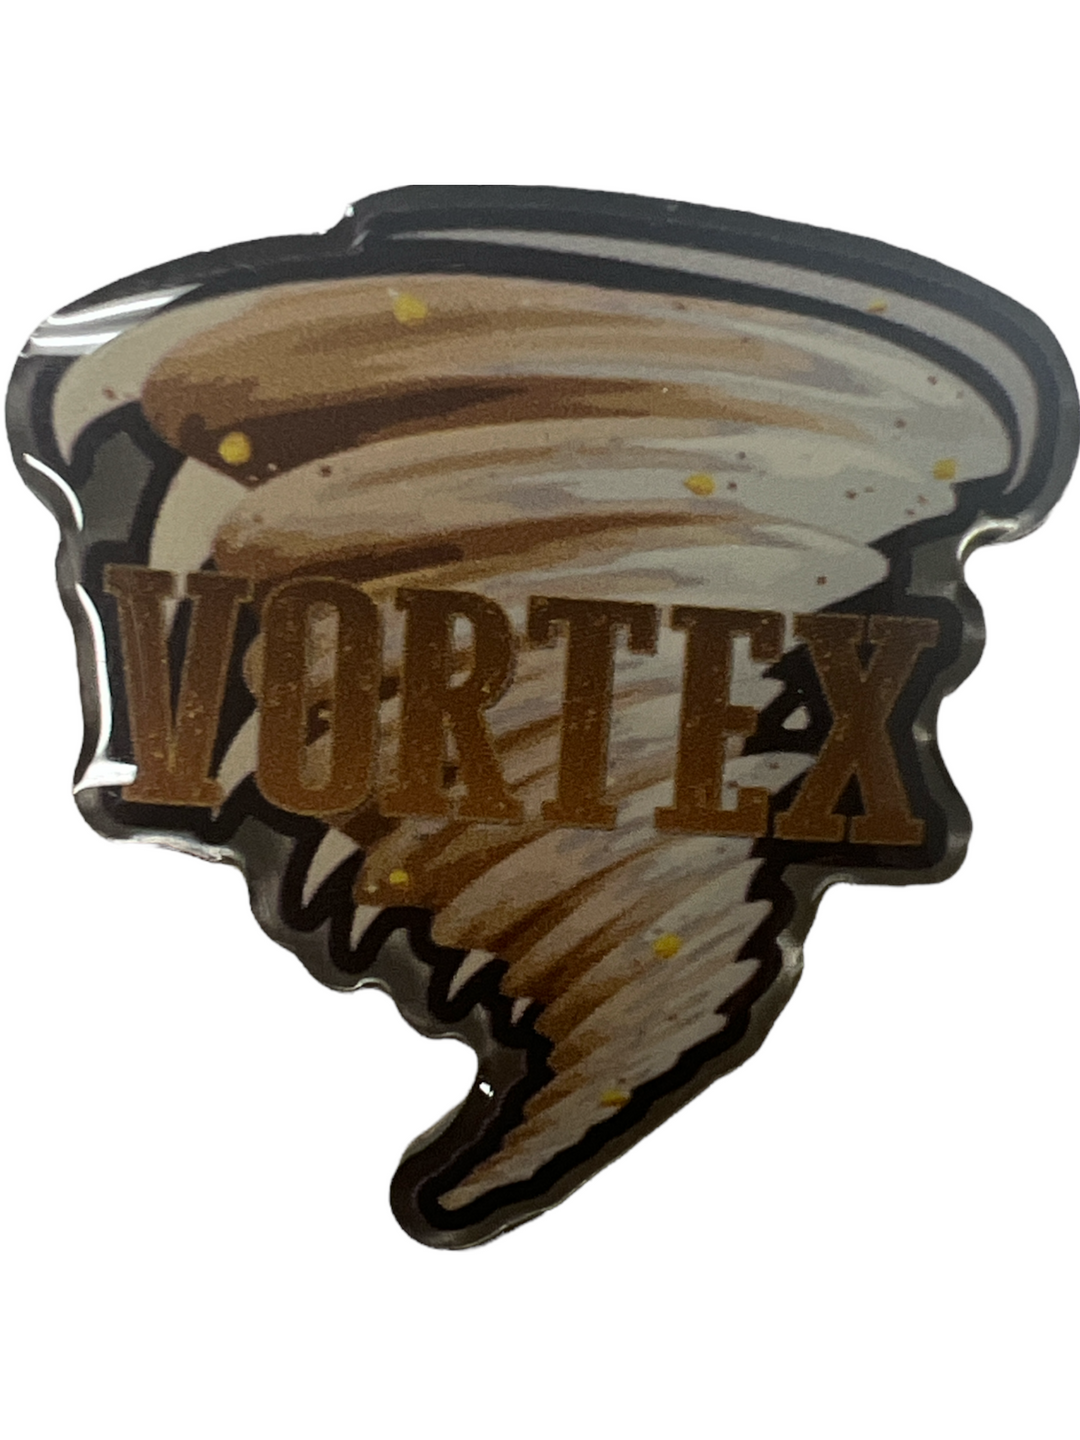 Canada's Wonderland Vortex Logo Pin